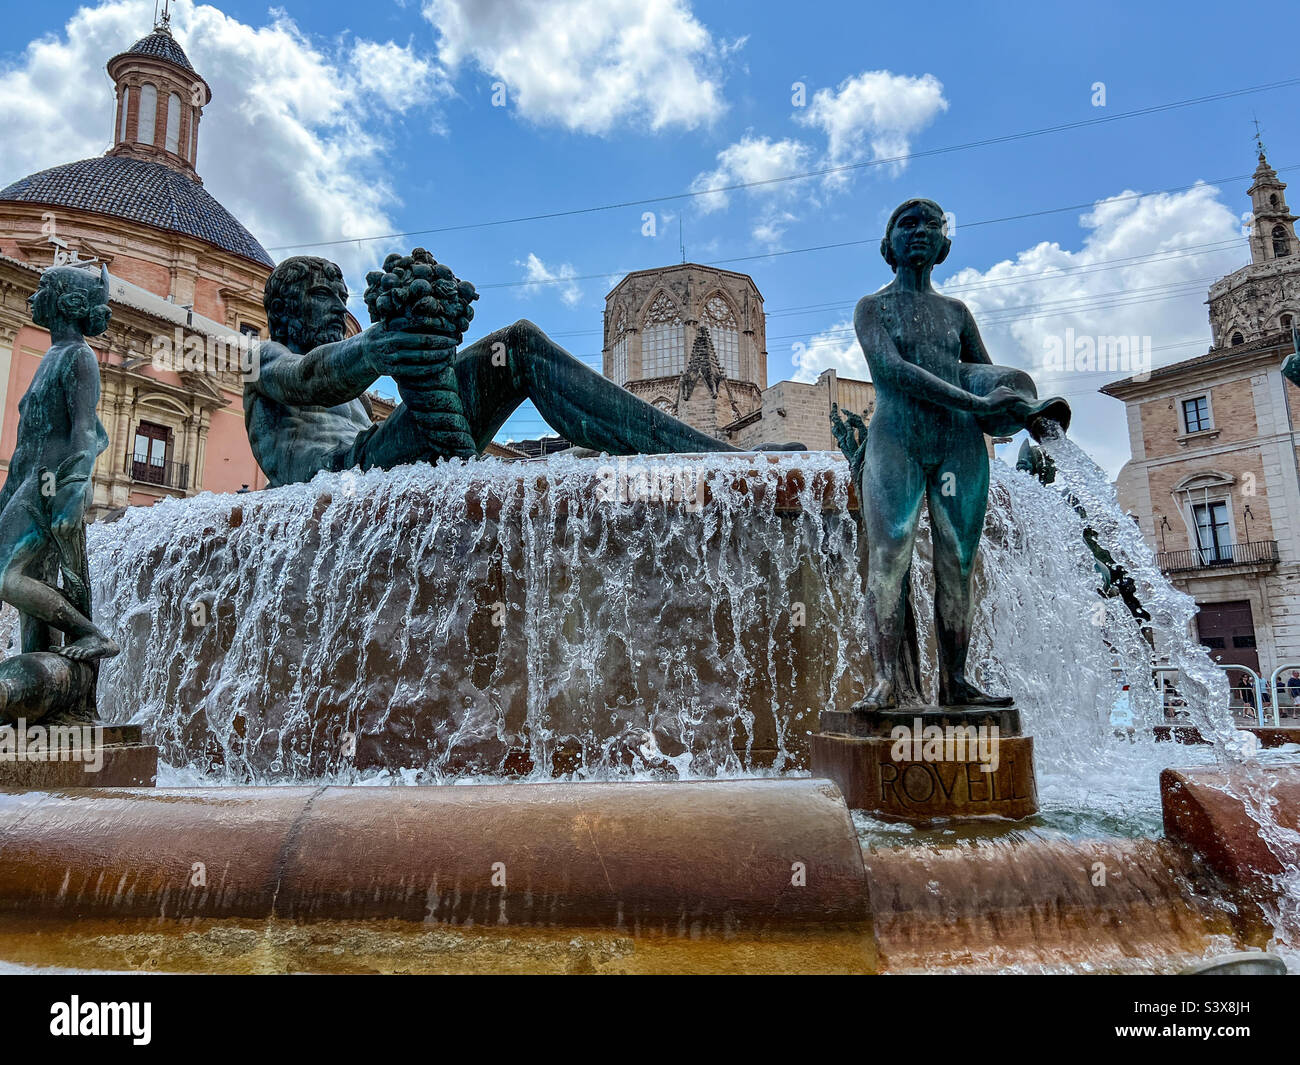 Turia fountain in Plaza de La Virgen in the centre of old town Valencia in Spain Stock Photo